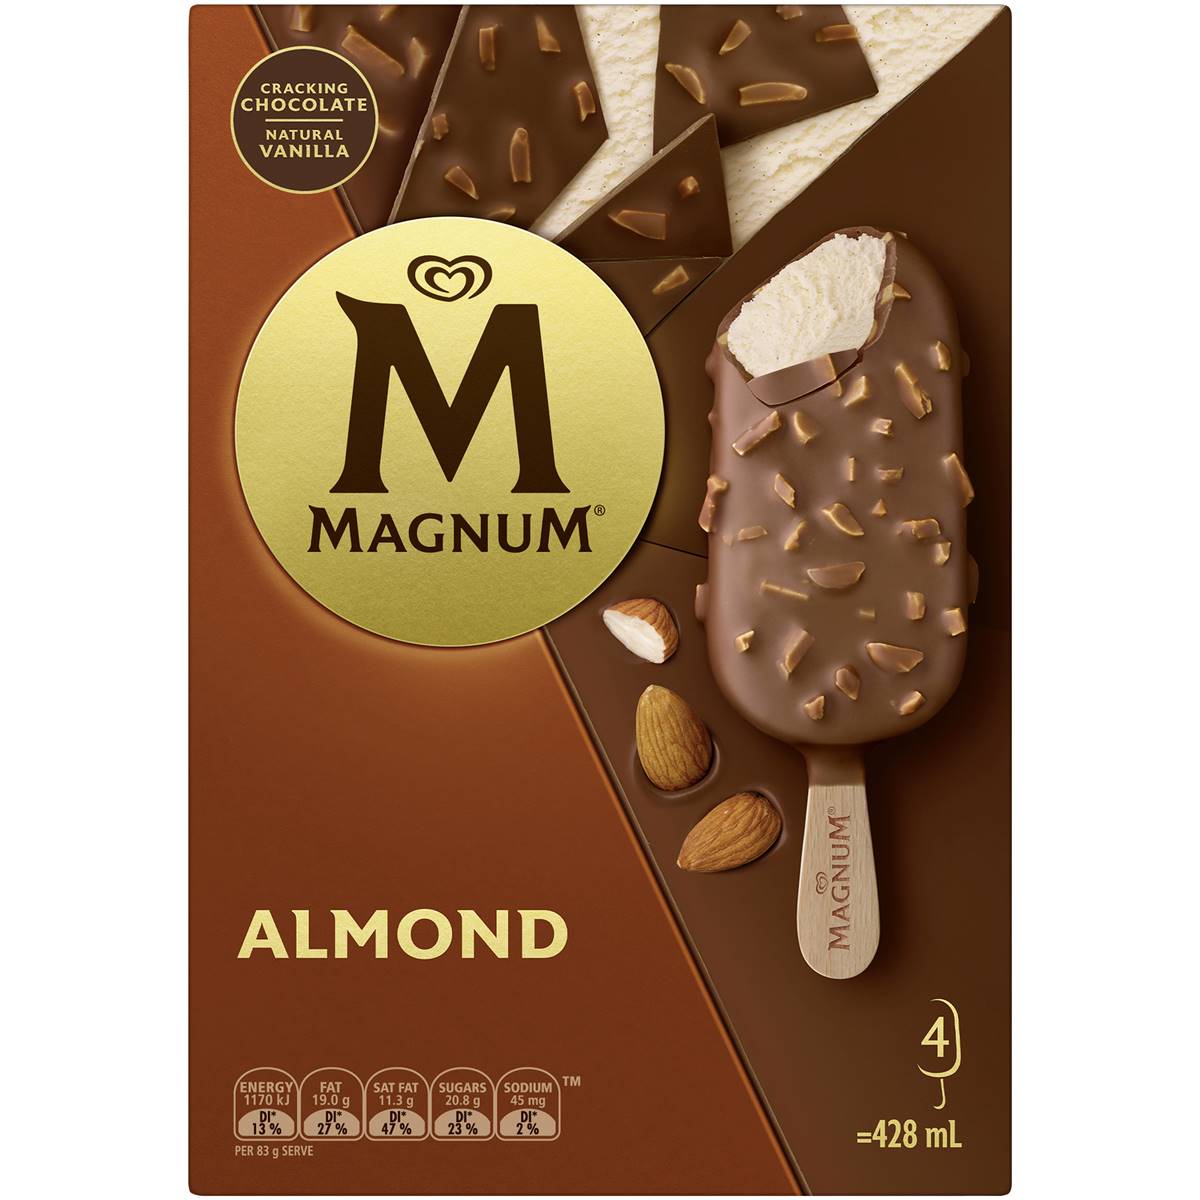 New Magnum Ice Cream